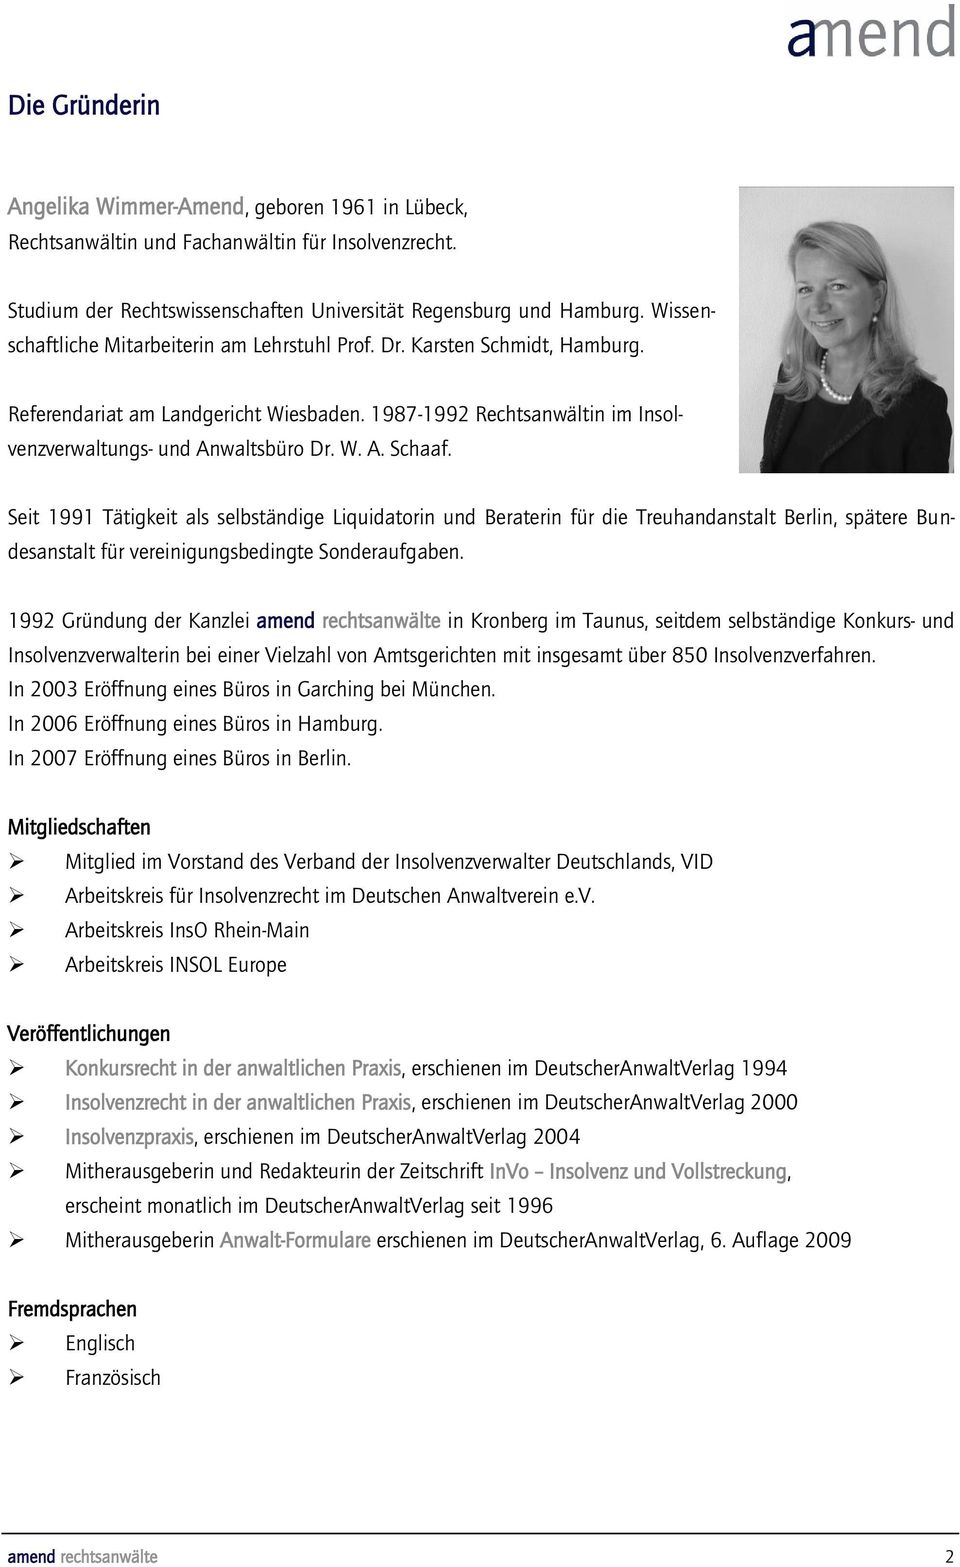 Seit 1991 Tätigkeit als selbständige Liquidatorin und Beraterin für die Treuhandanstalt Berlin, spätere Bundesanstalt für vereinigungsbedingte Sonderaufgaben.